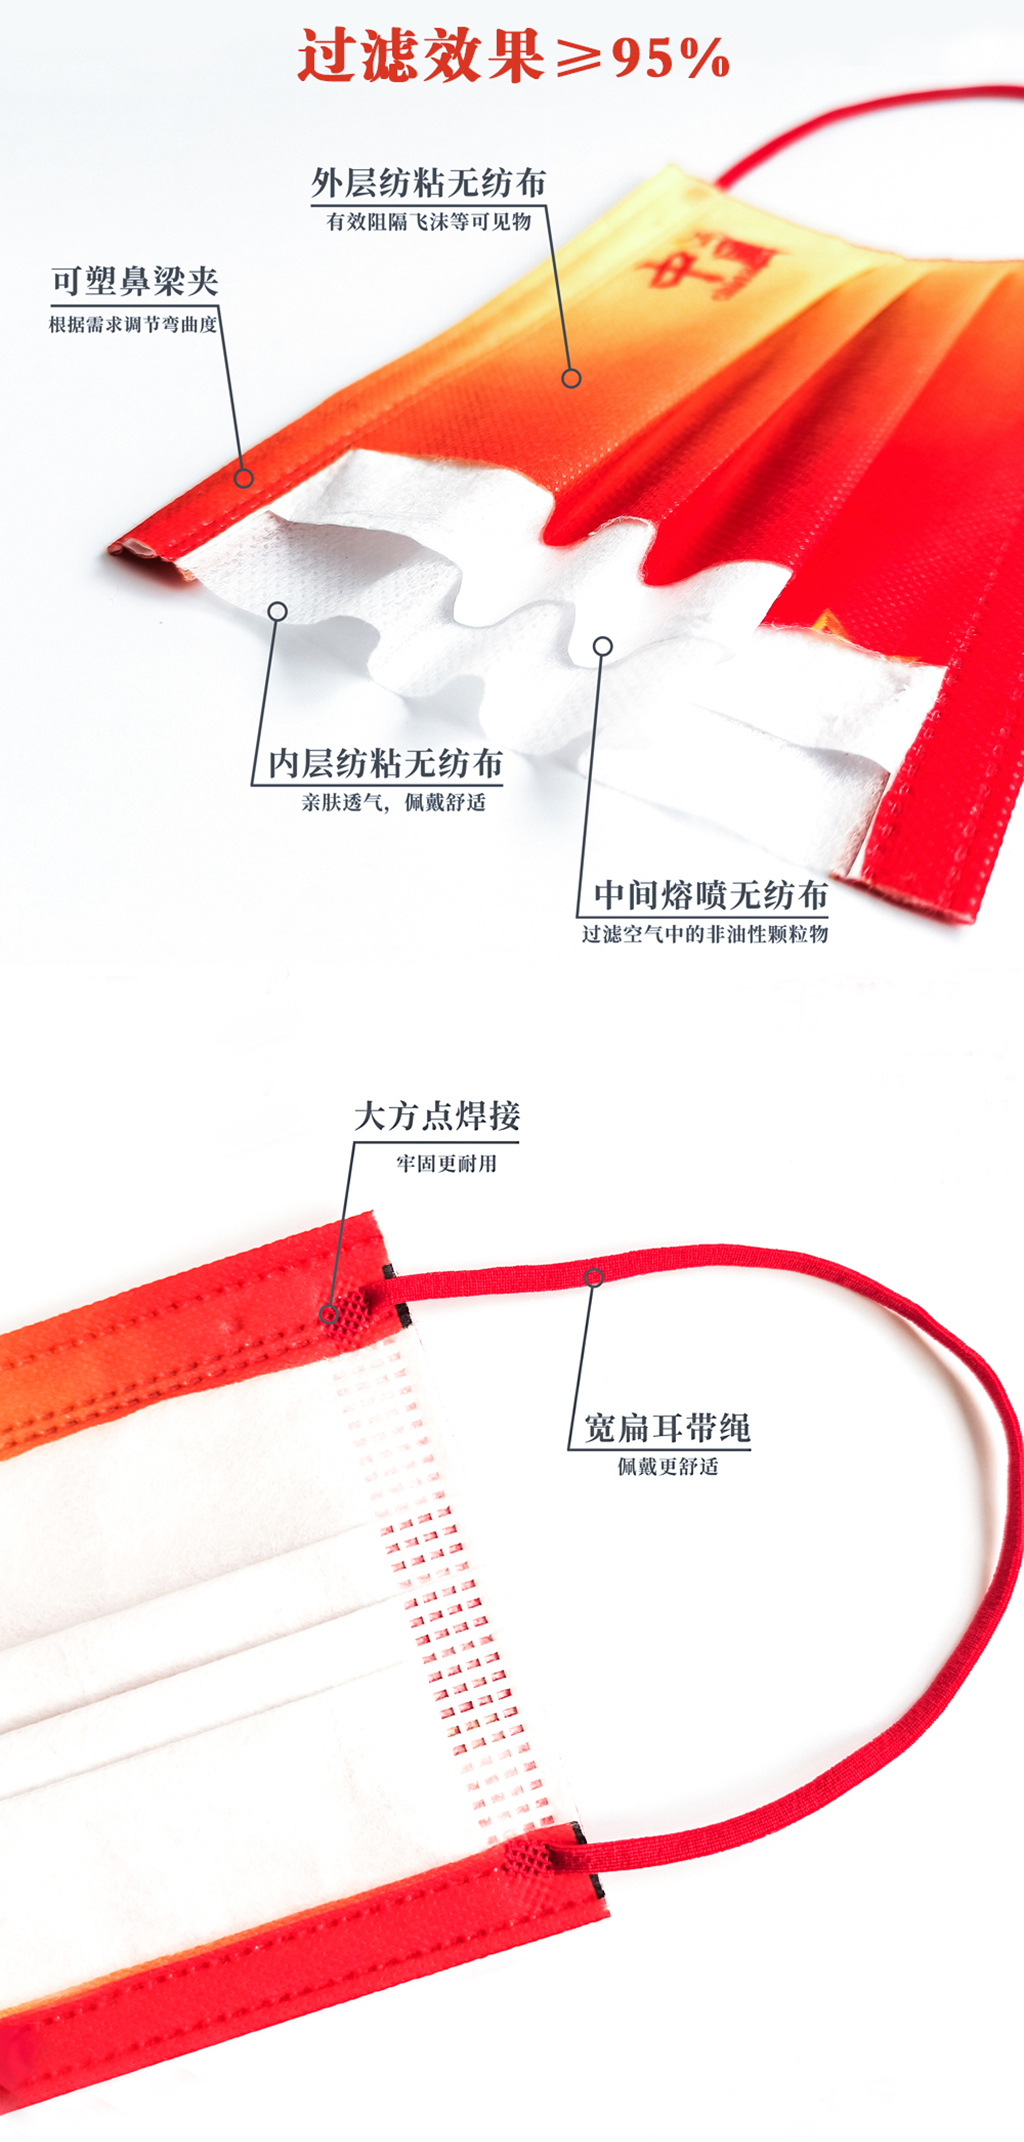 海迪科一次性口罩中國紅口罩十一國慶特供款.jpg